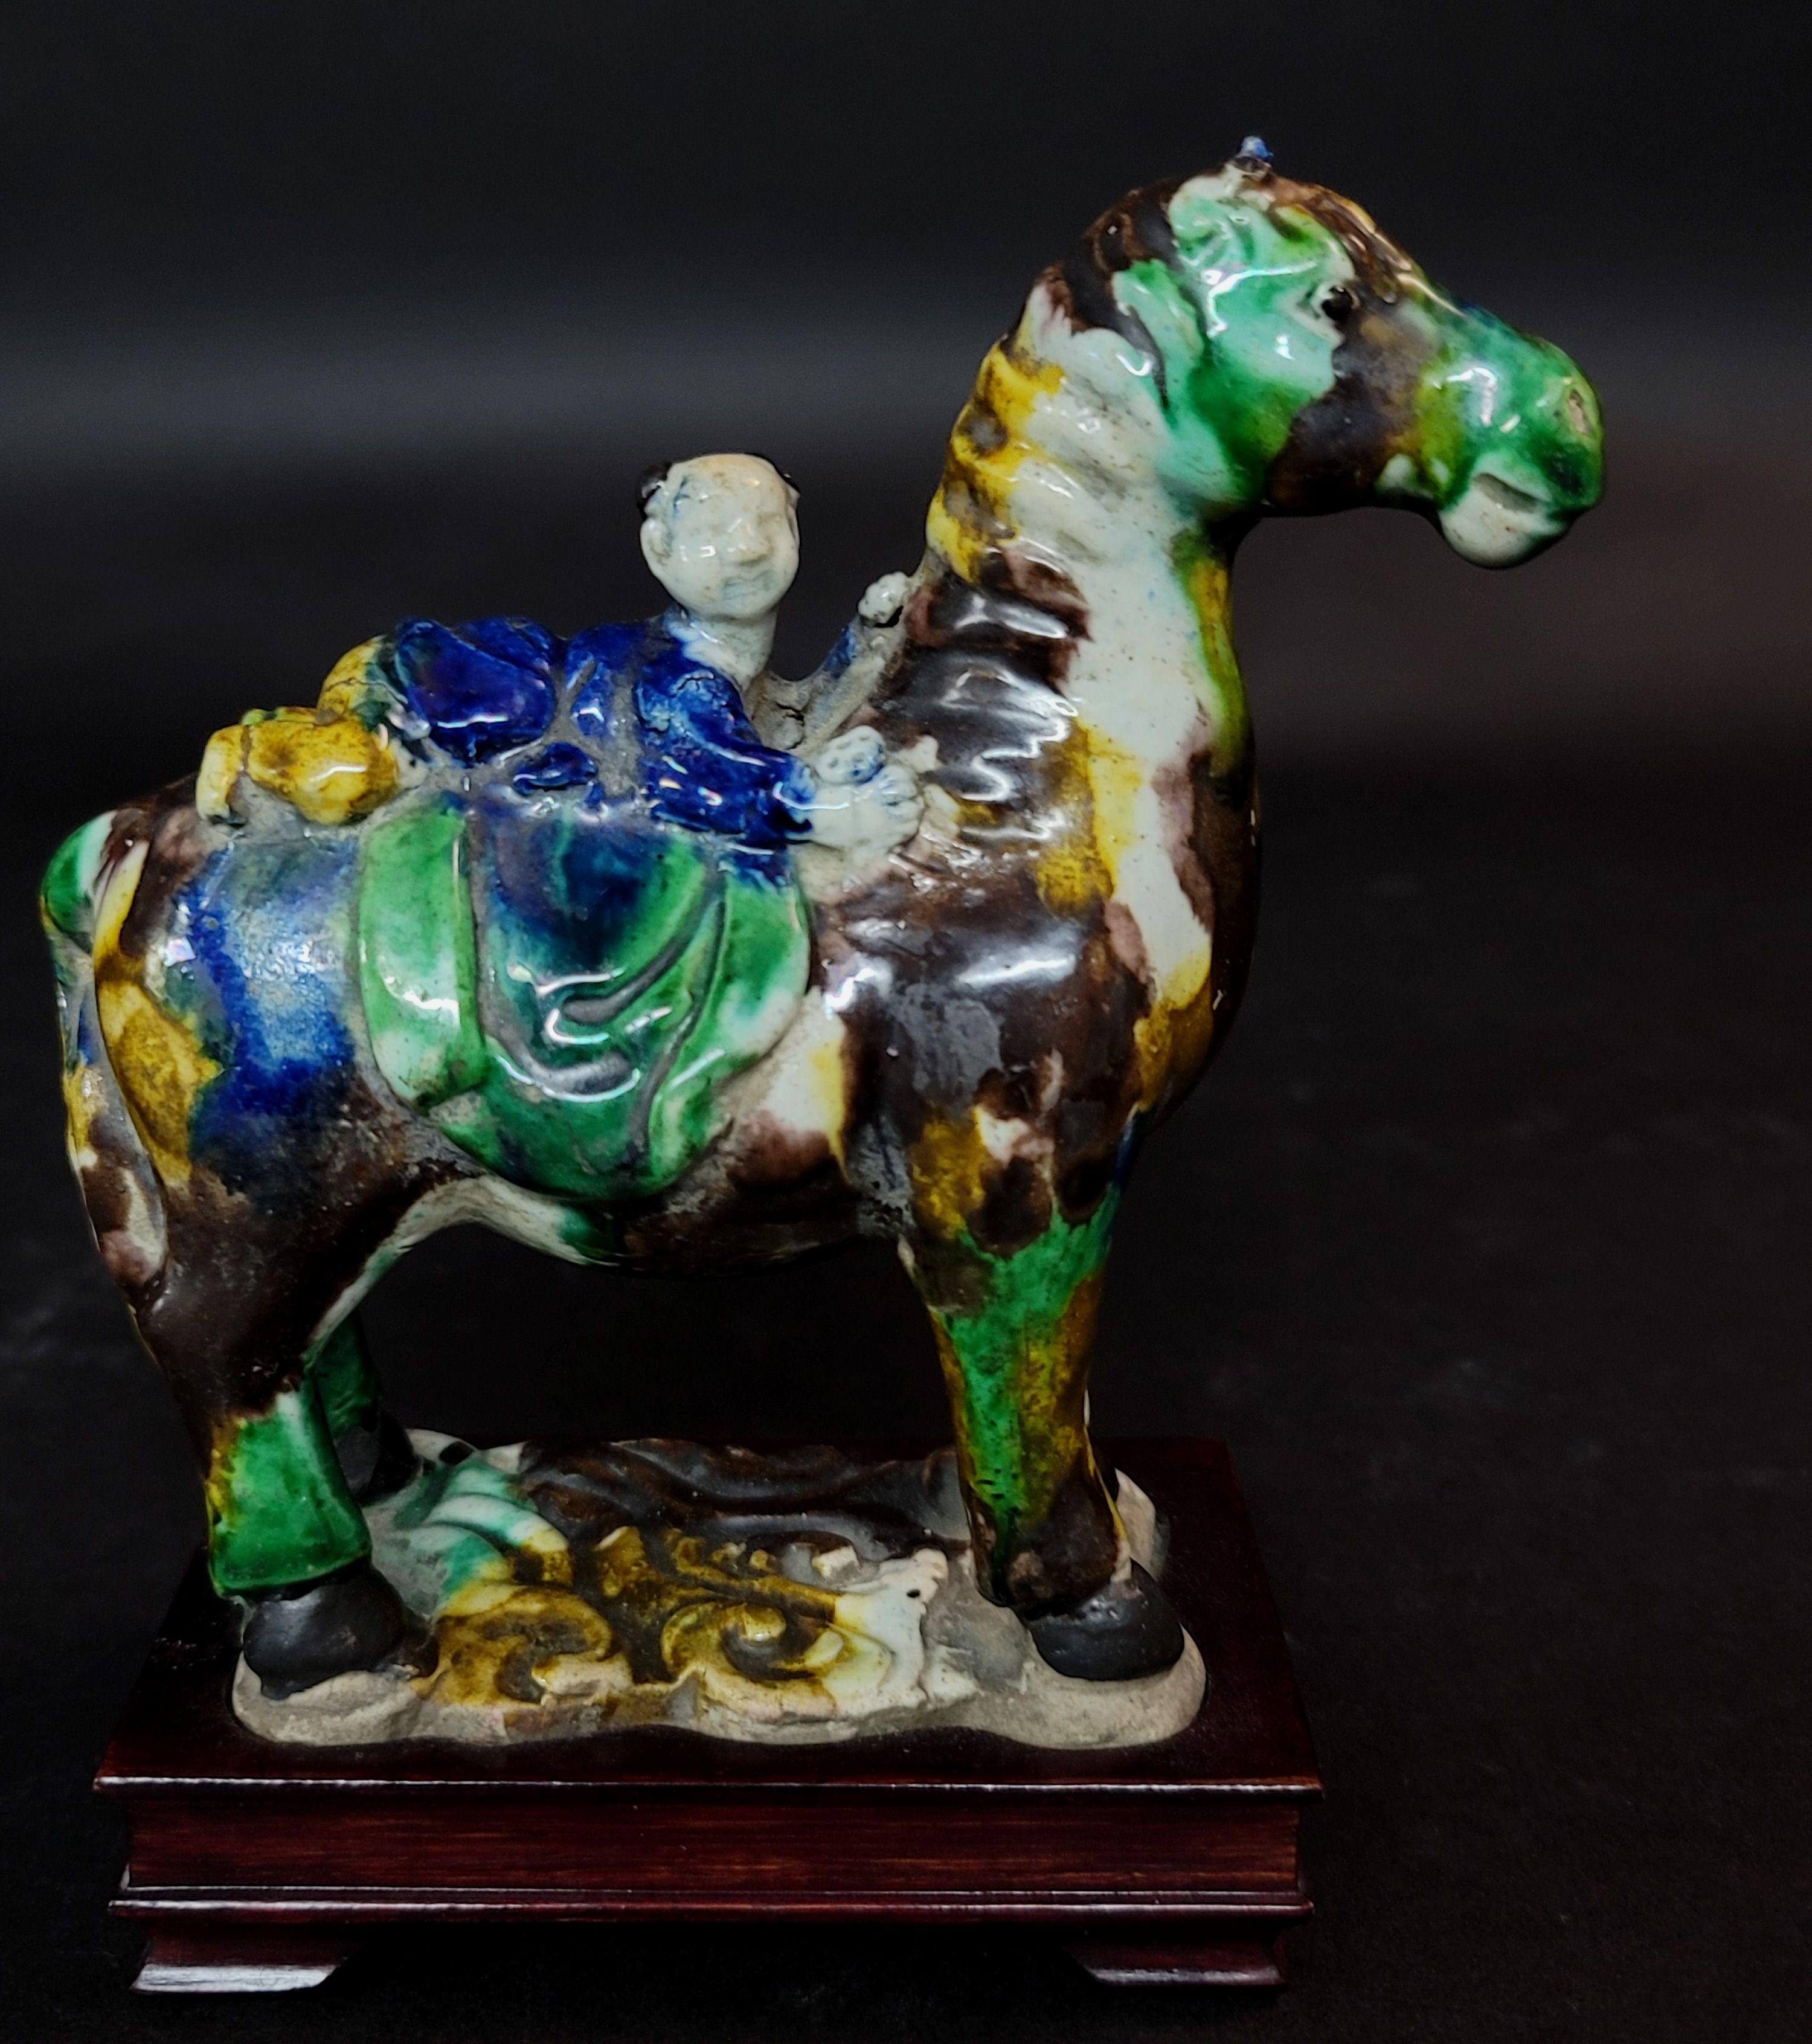 Chinesische Su Sanci glasierte Figur eines Pferdes und eines Jungen. Für die Sancai-Dekoration werden überwiegend Glasuren in drei Farben verwendet: braun oder bernsteinfarben, grün oder cremeweiß, seltener auch blau. Diese Figur, die vor allem mit